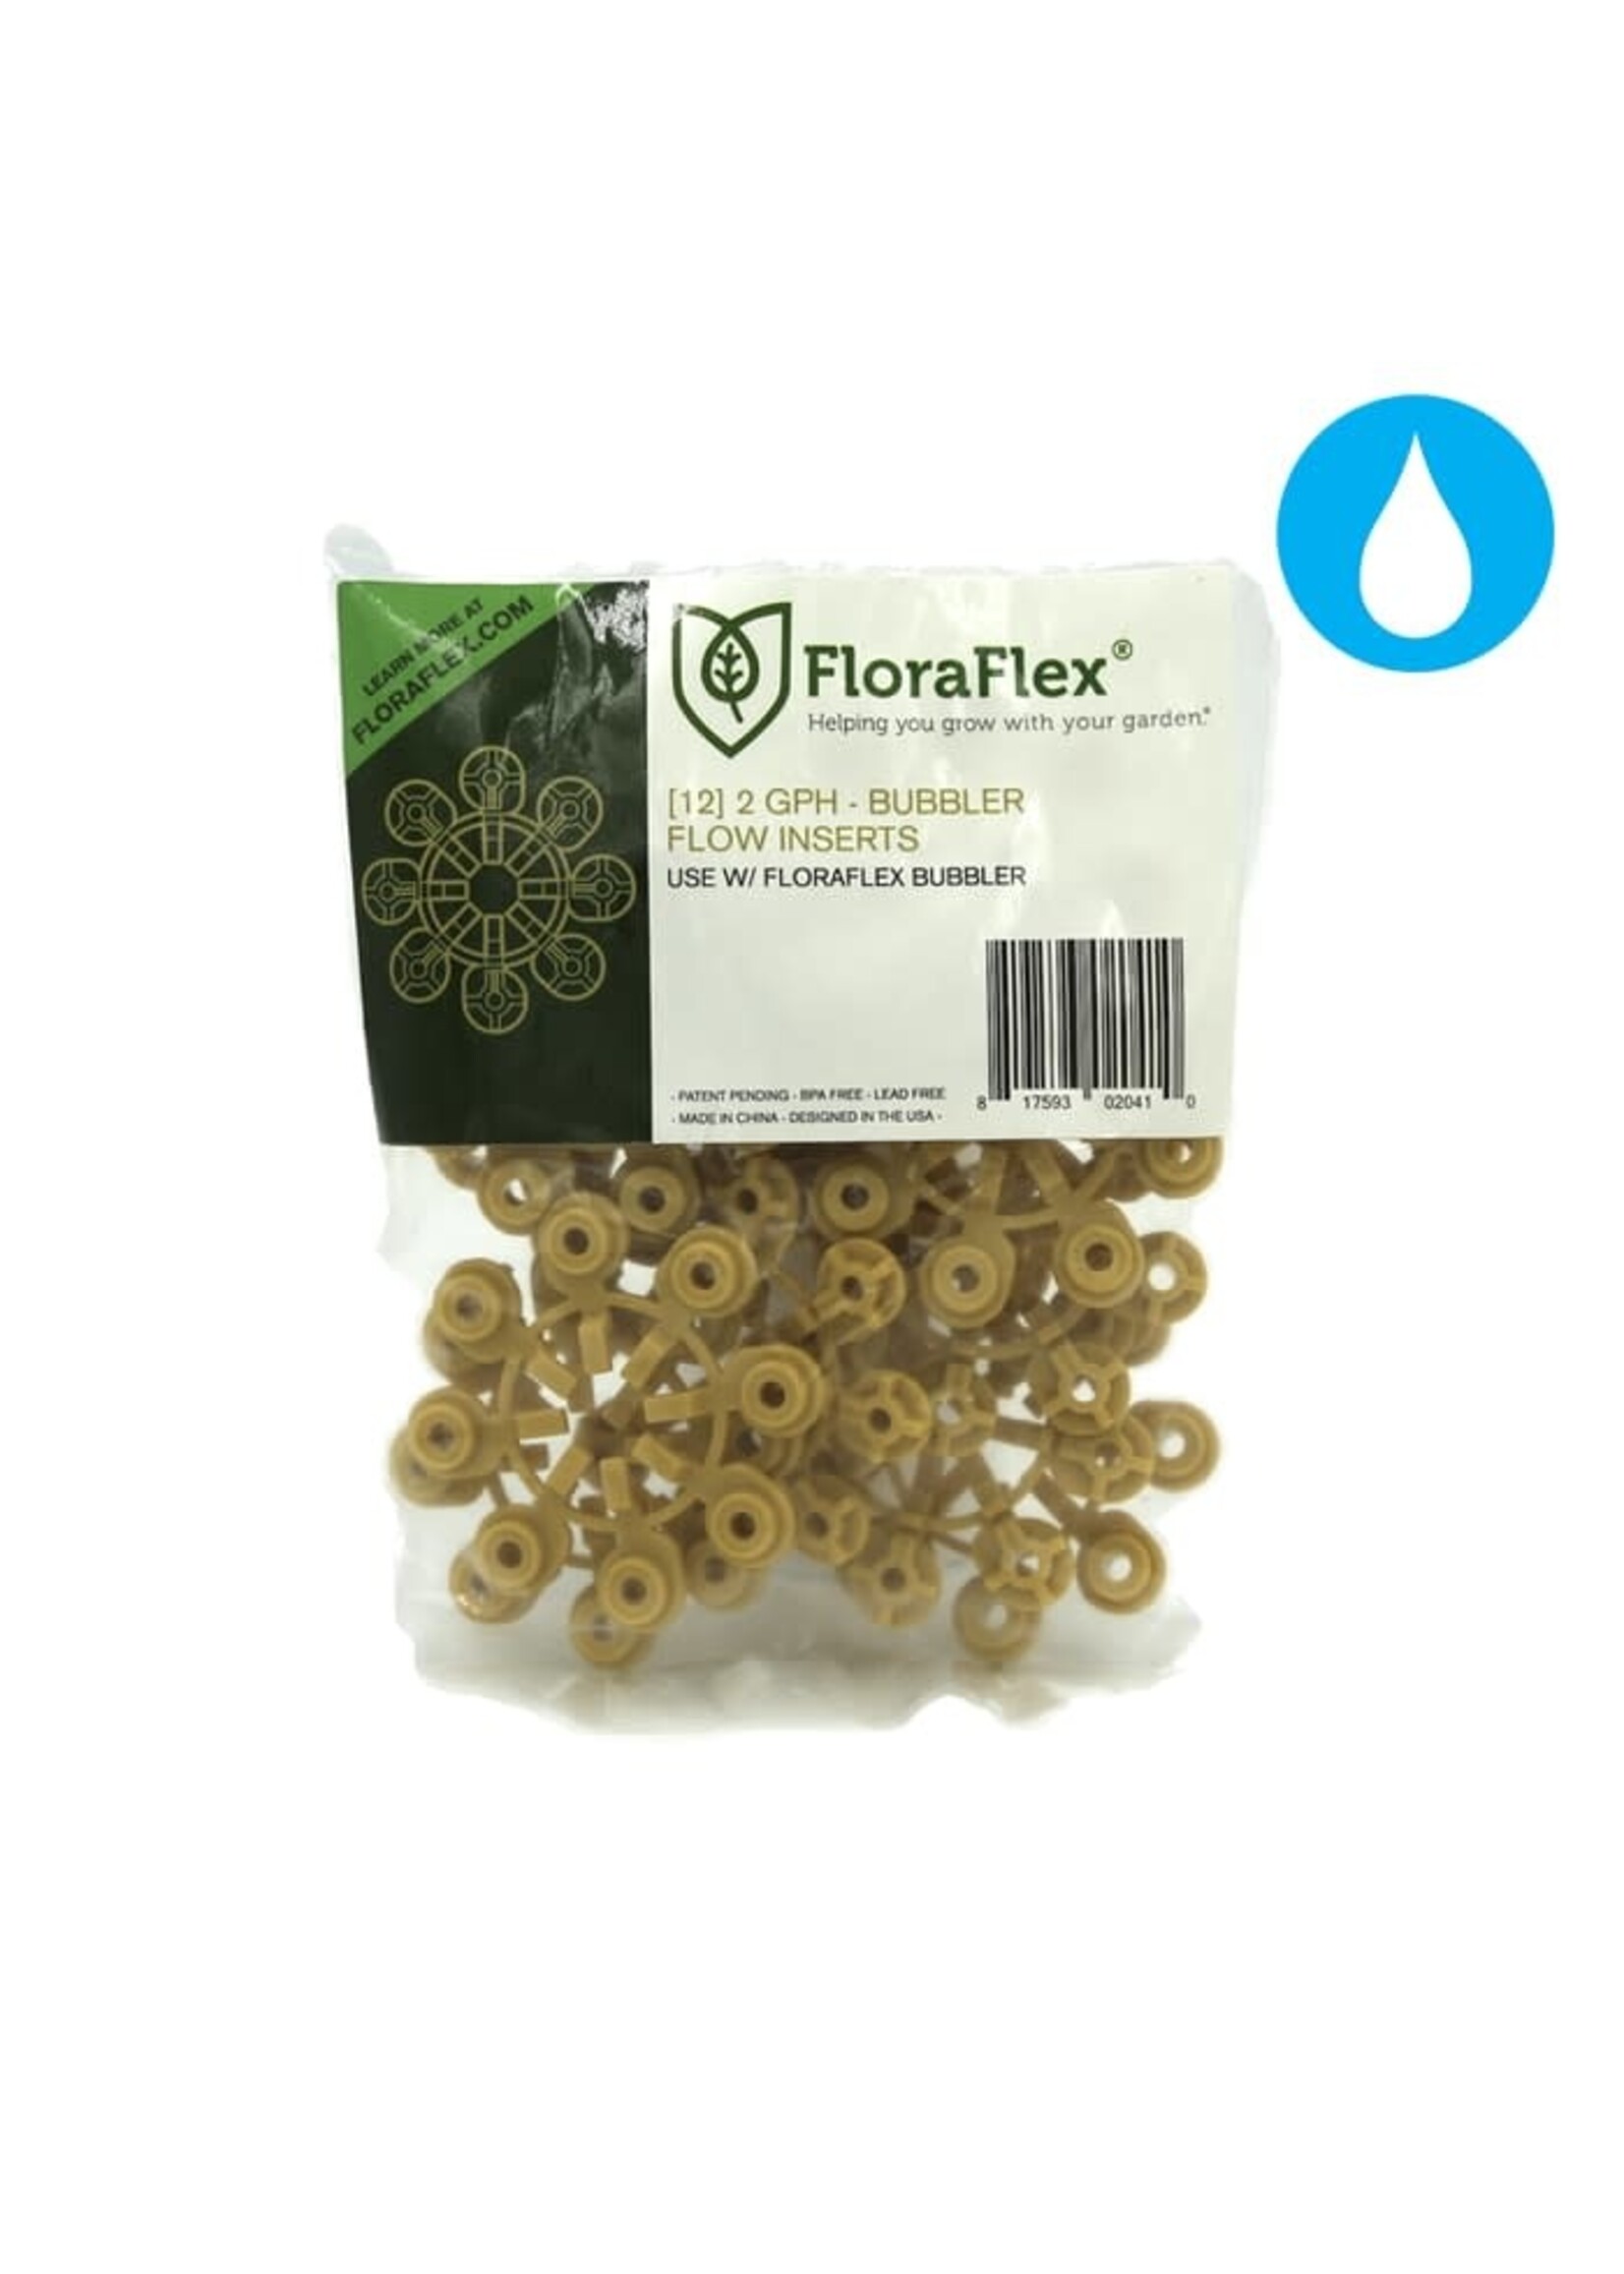 FloraFlex FloraFlex Bubbler 2GPH (12 Pack)